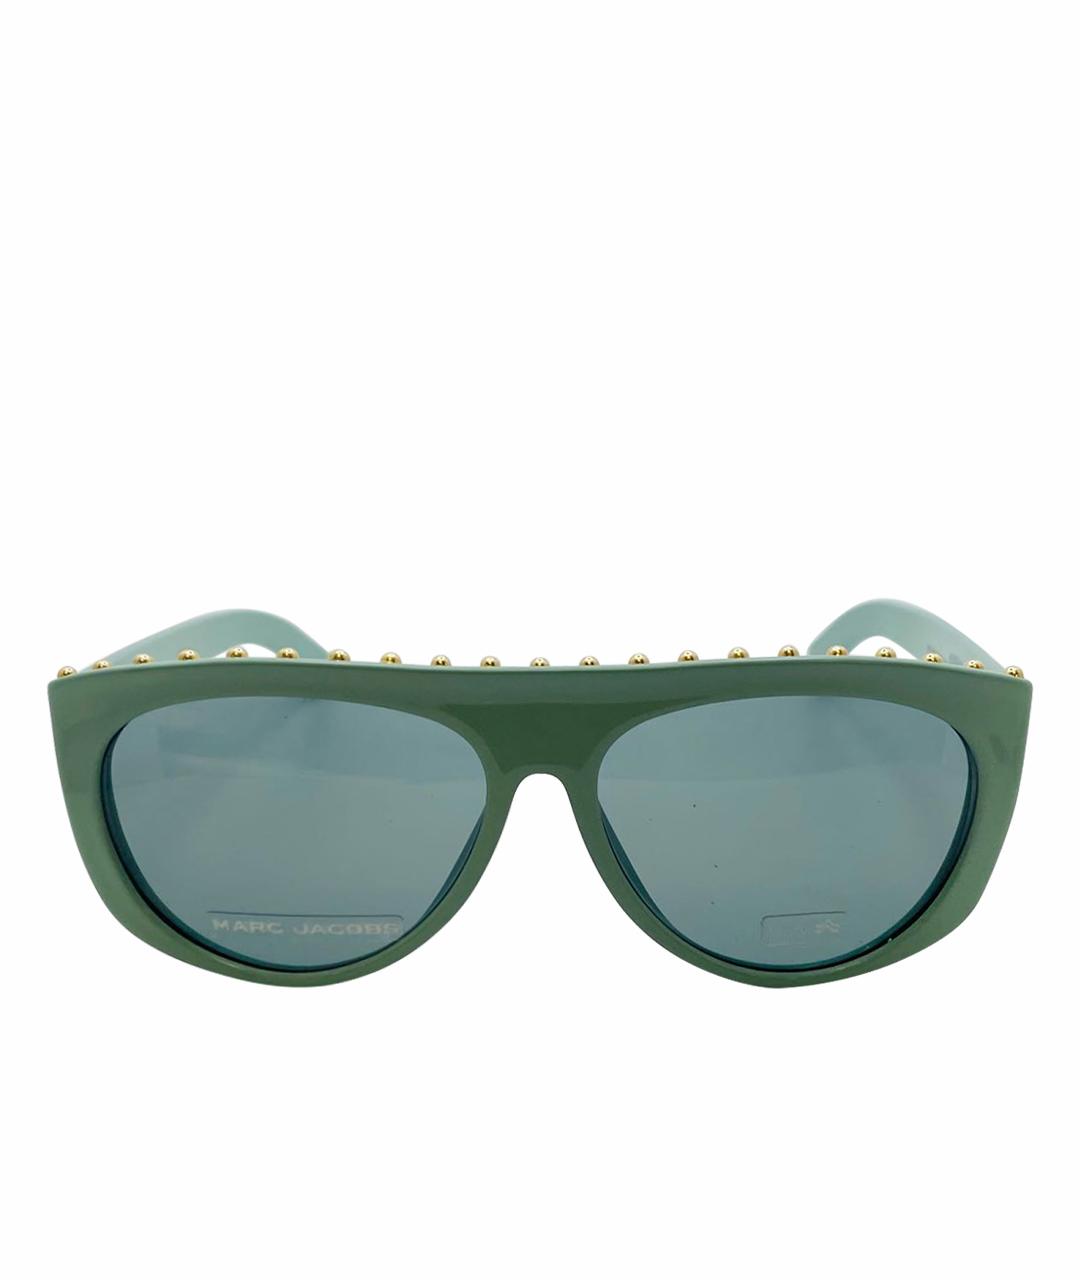 MARC JACOBS Бирюзовые пластиковые солнцезащитные очки, фото 1